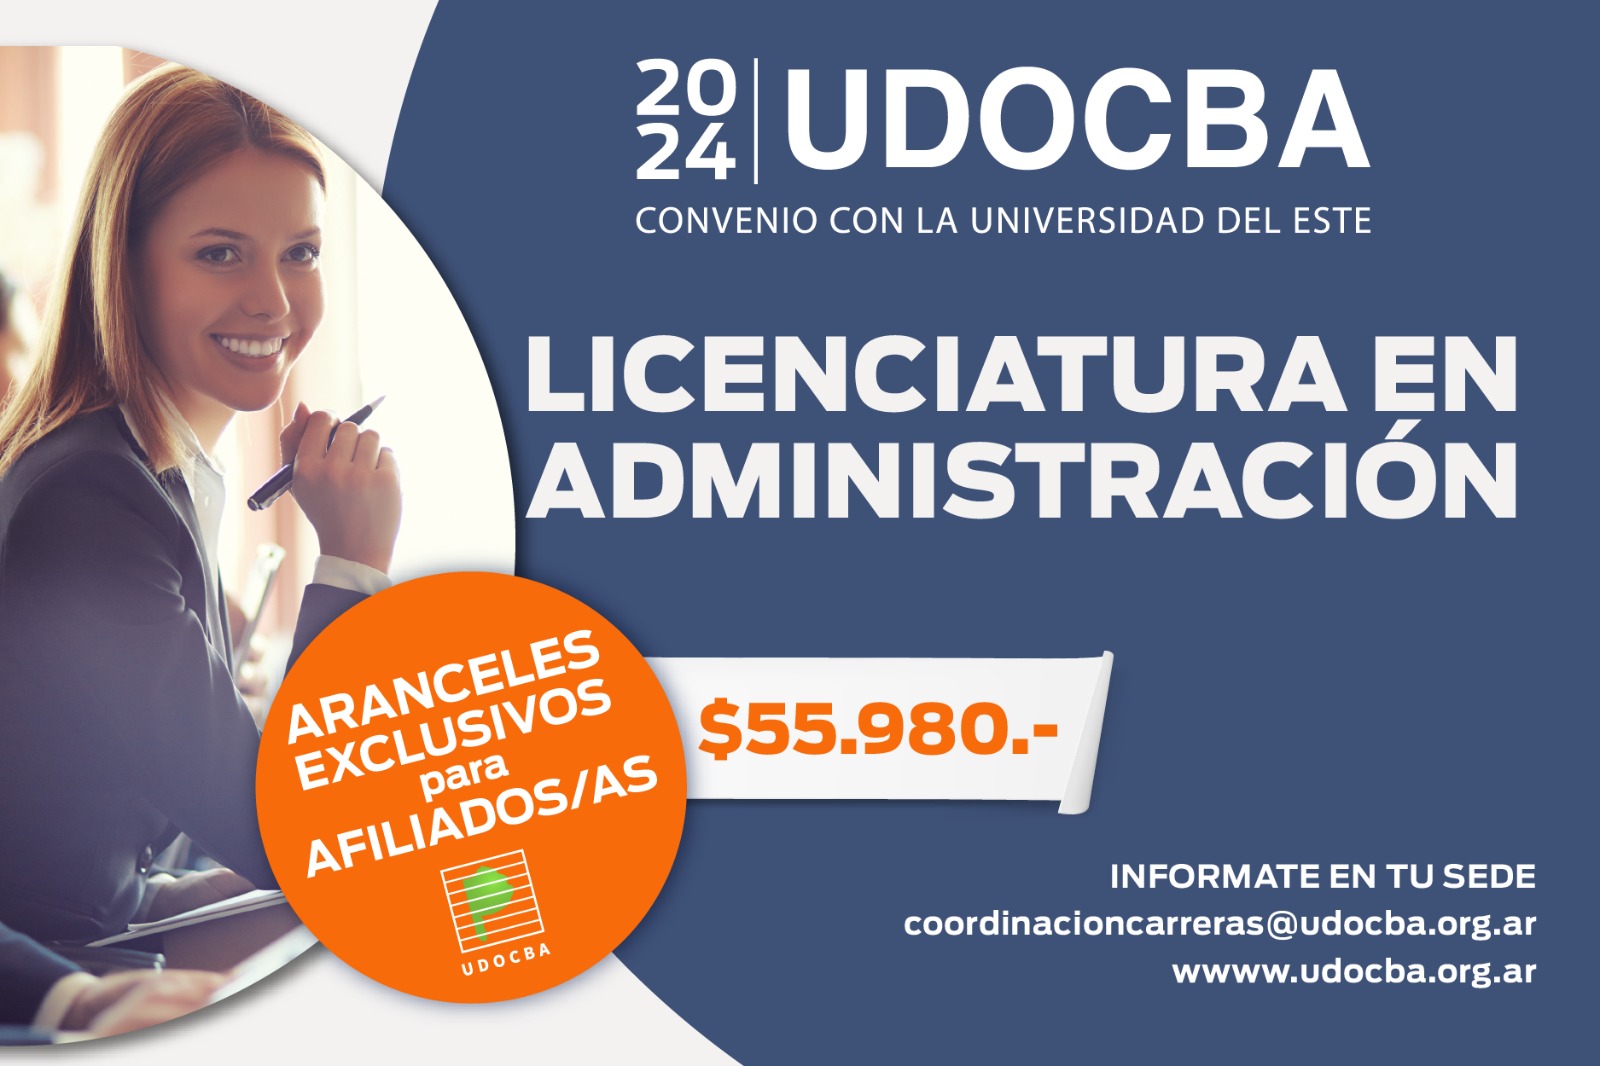 UDOCBA Licenciaturas convenio UDOCBA - UDE-0